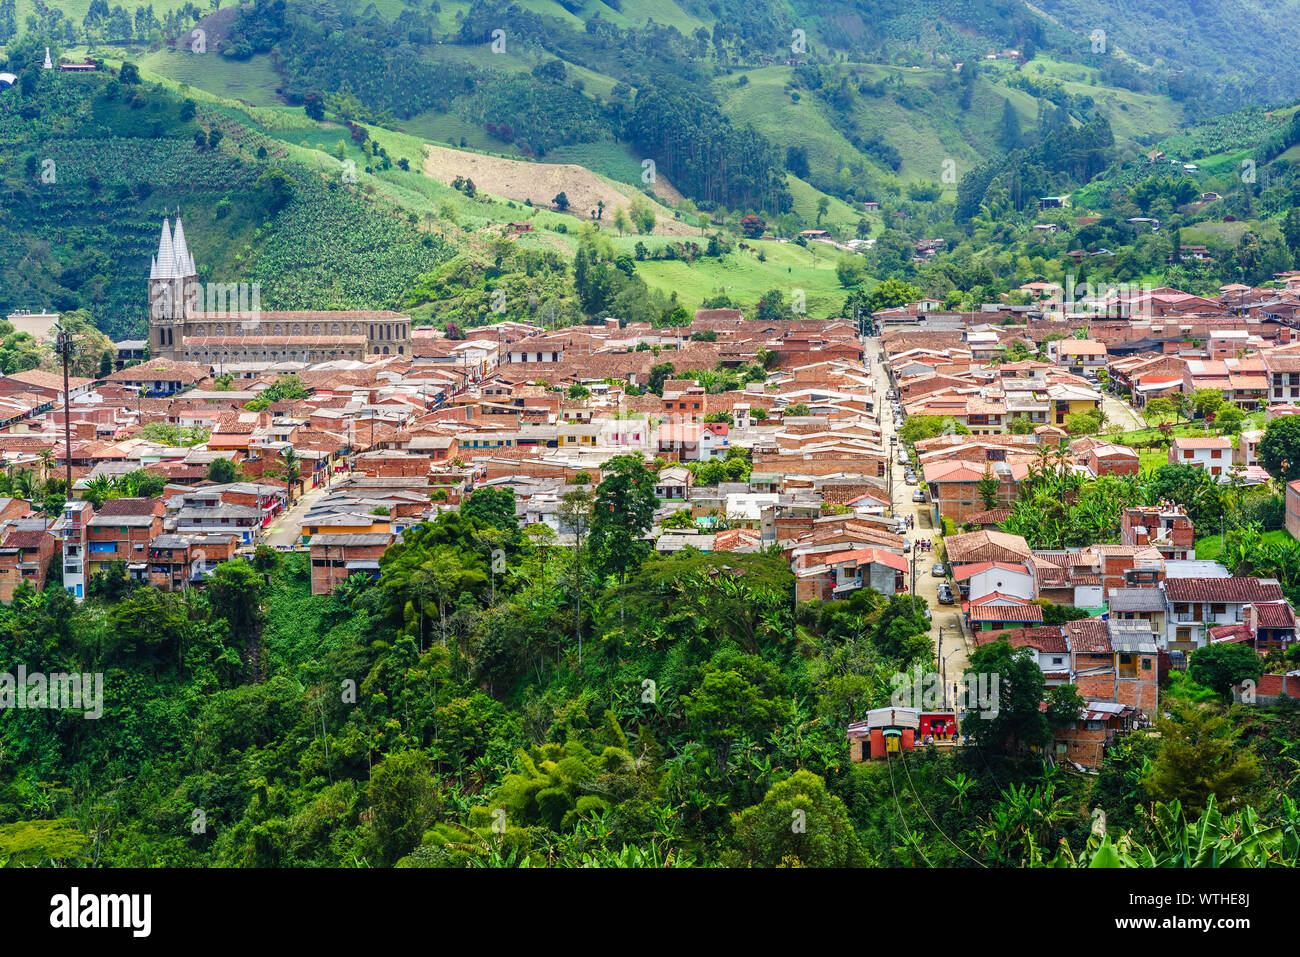 Vue aérienne sur la ville coloniale de jardin, Colombie Banque D'Images